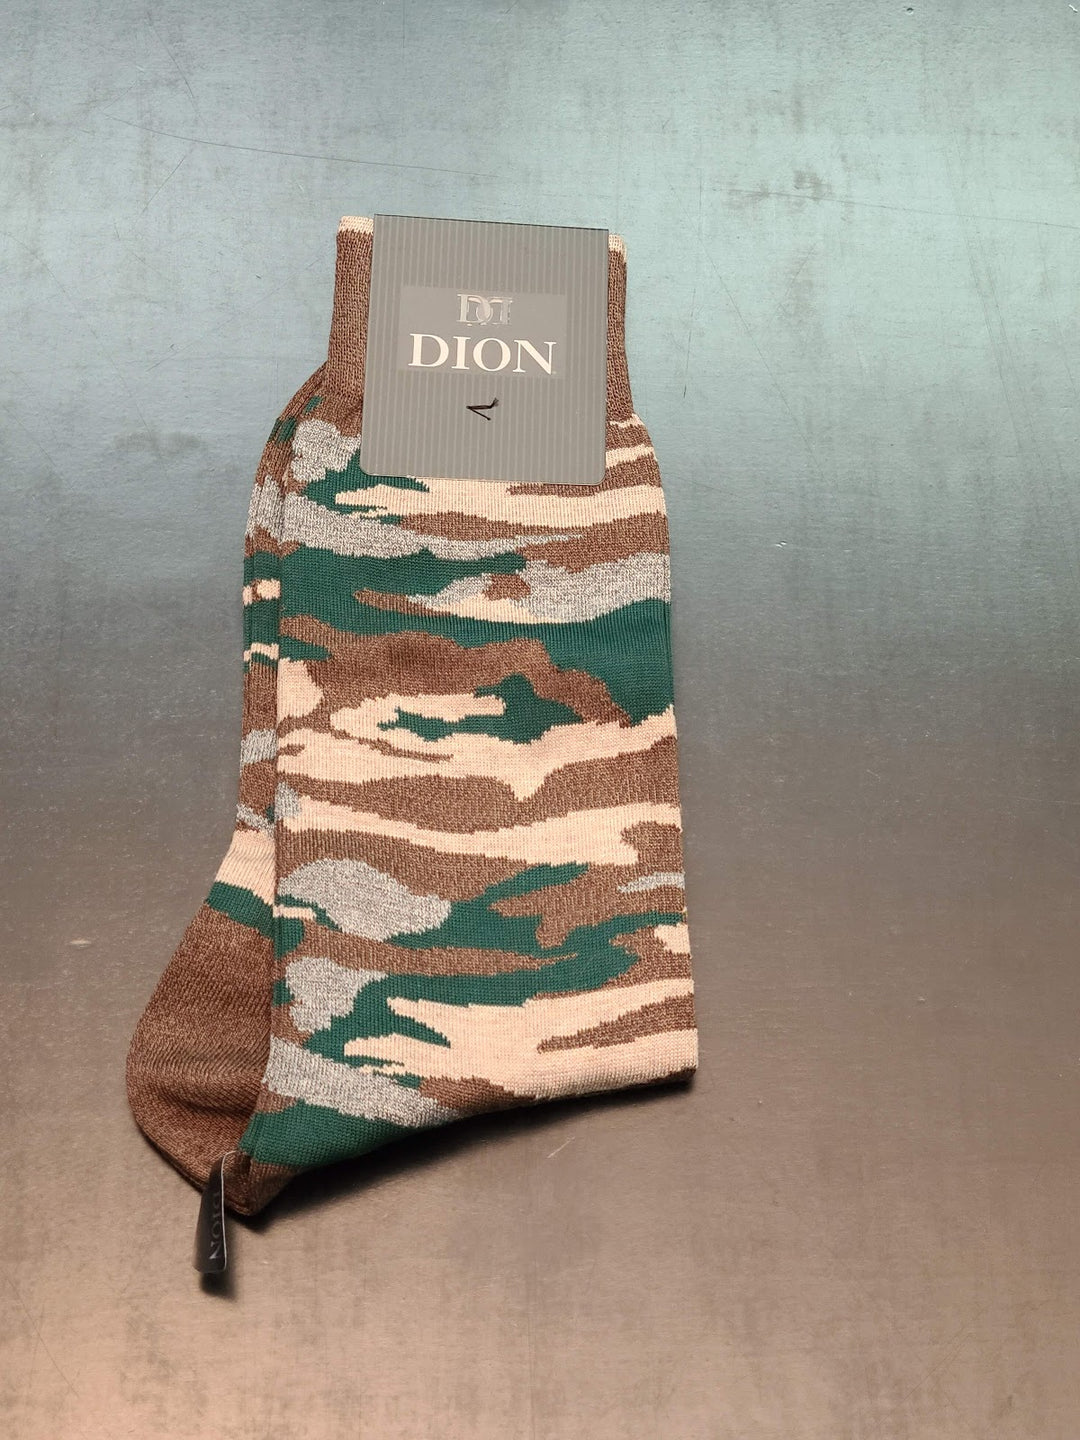 Dion Dress Socks